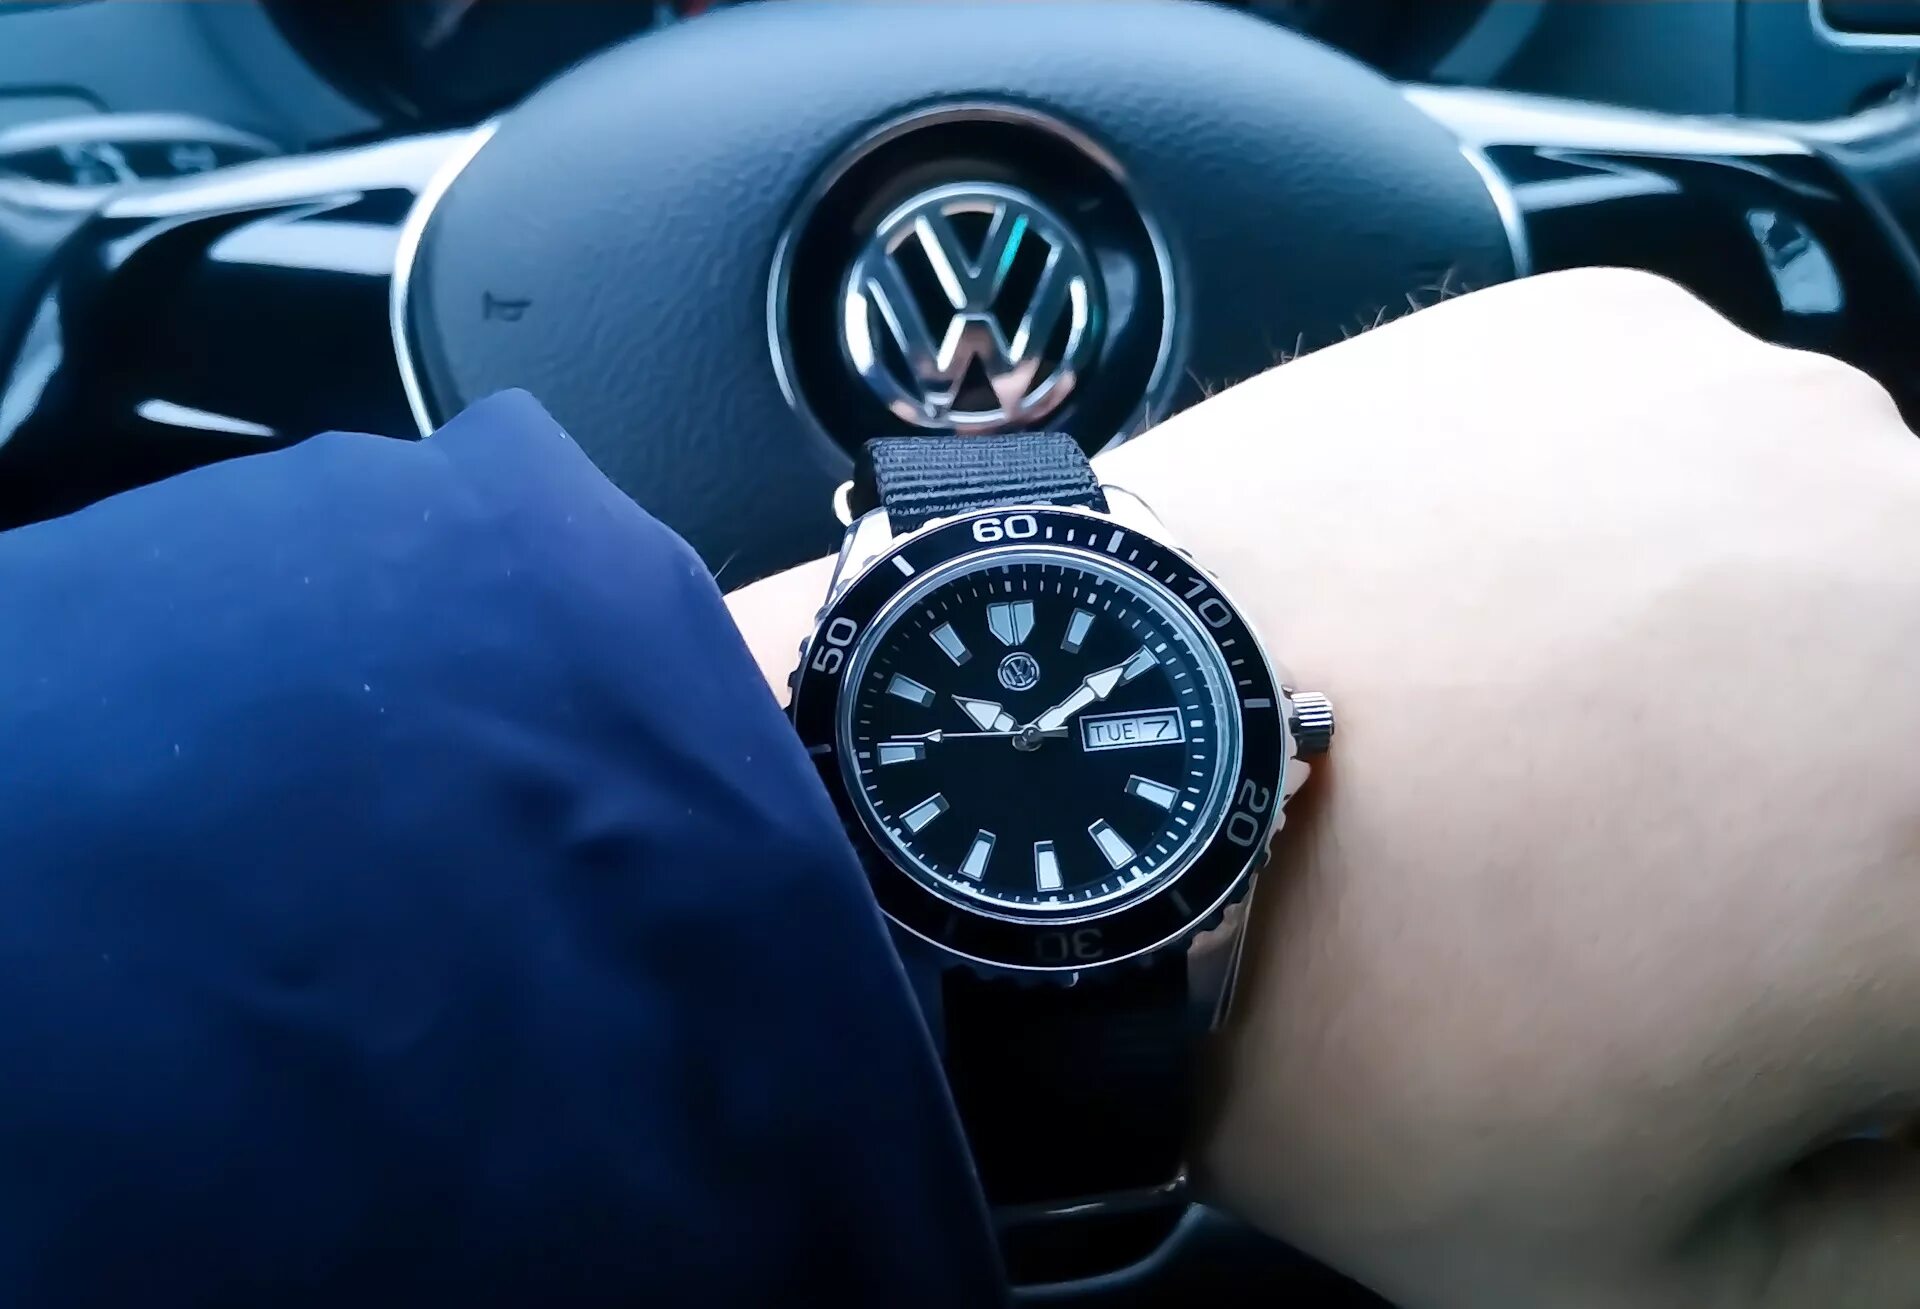 Наручные часы Volkswagen 5td050800. Мужские часы VW 33d050800a. Наручные часы Volkswagen 5g0050800041. Часы Volkswagen мужские наручные. Часы volkswagen